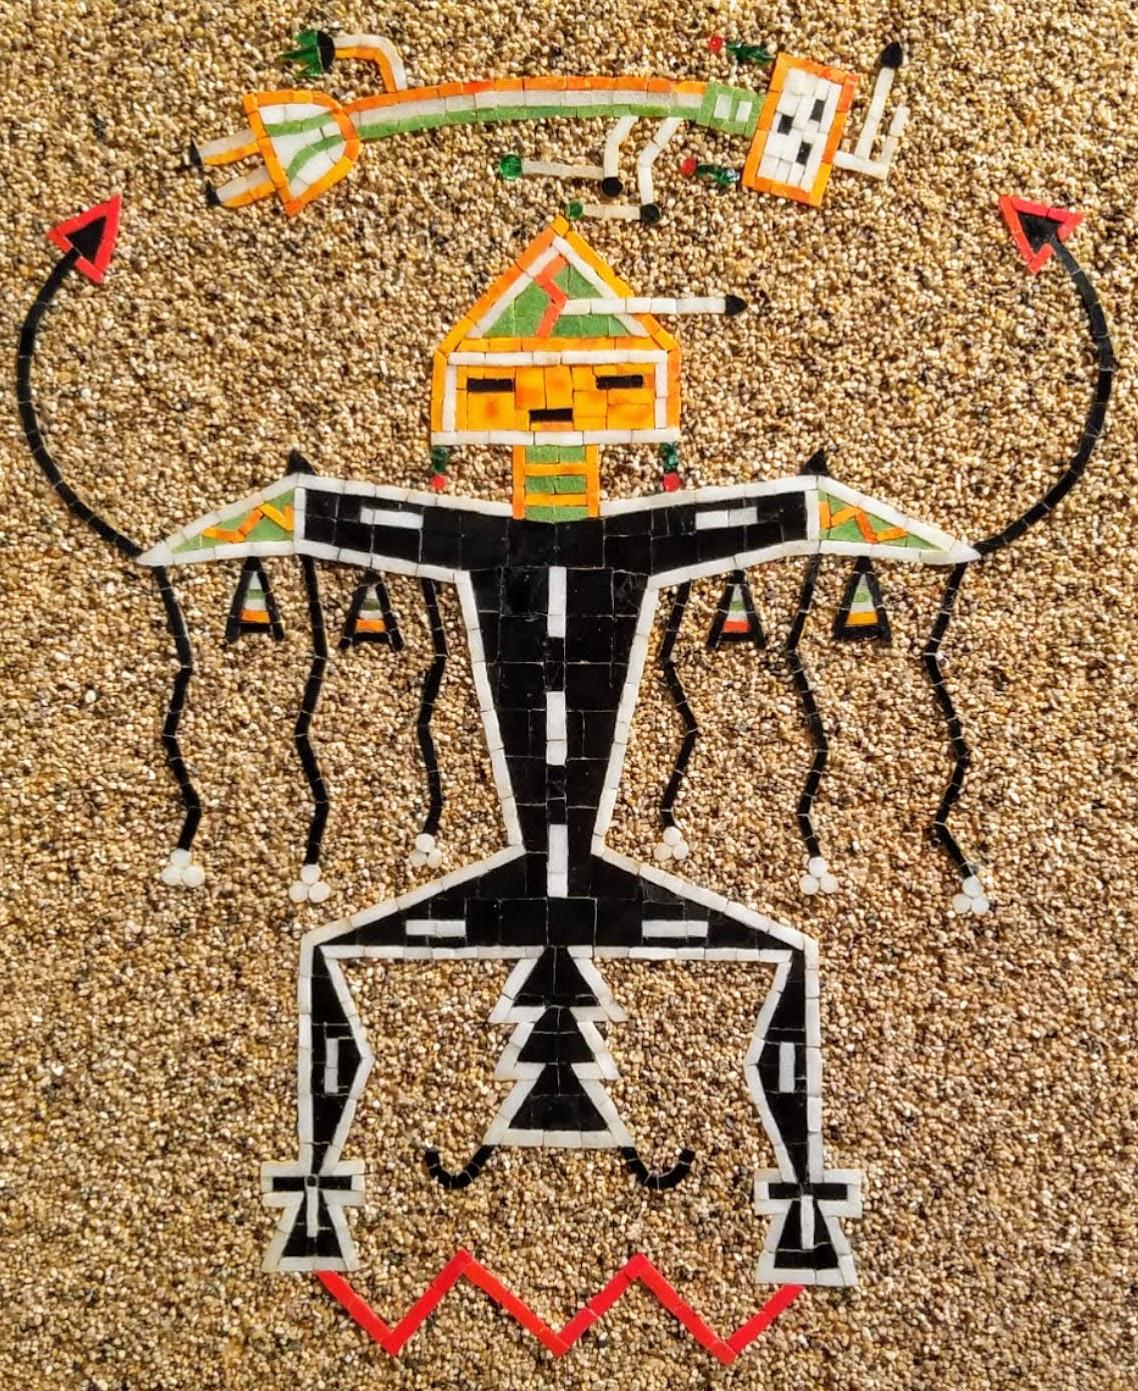 Panneau mural en mosaïque de peinture au sable Navajo représentant le mythologique Père Ciel ou Oiseau-Tonnerre Navajo, créé dans les années 1960 dans un format non traditionnel dans un studio de Tehachapi. Californie. 
L'artiste a créé une image